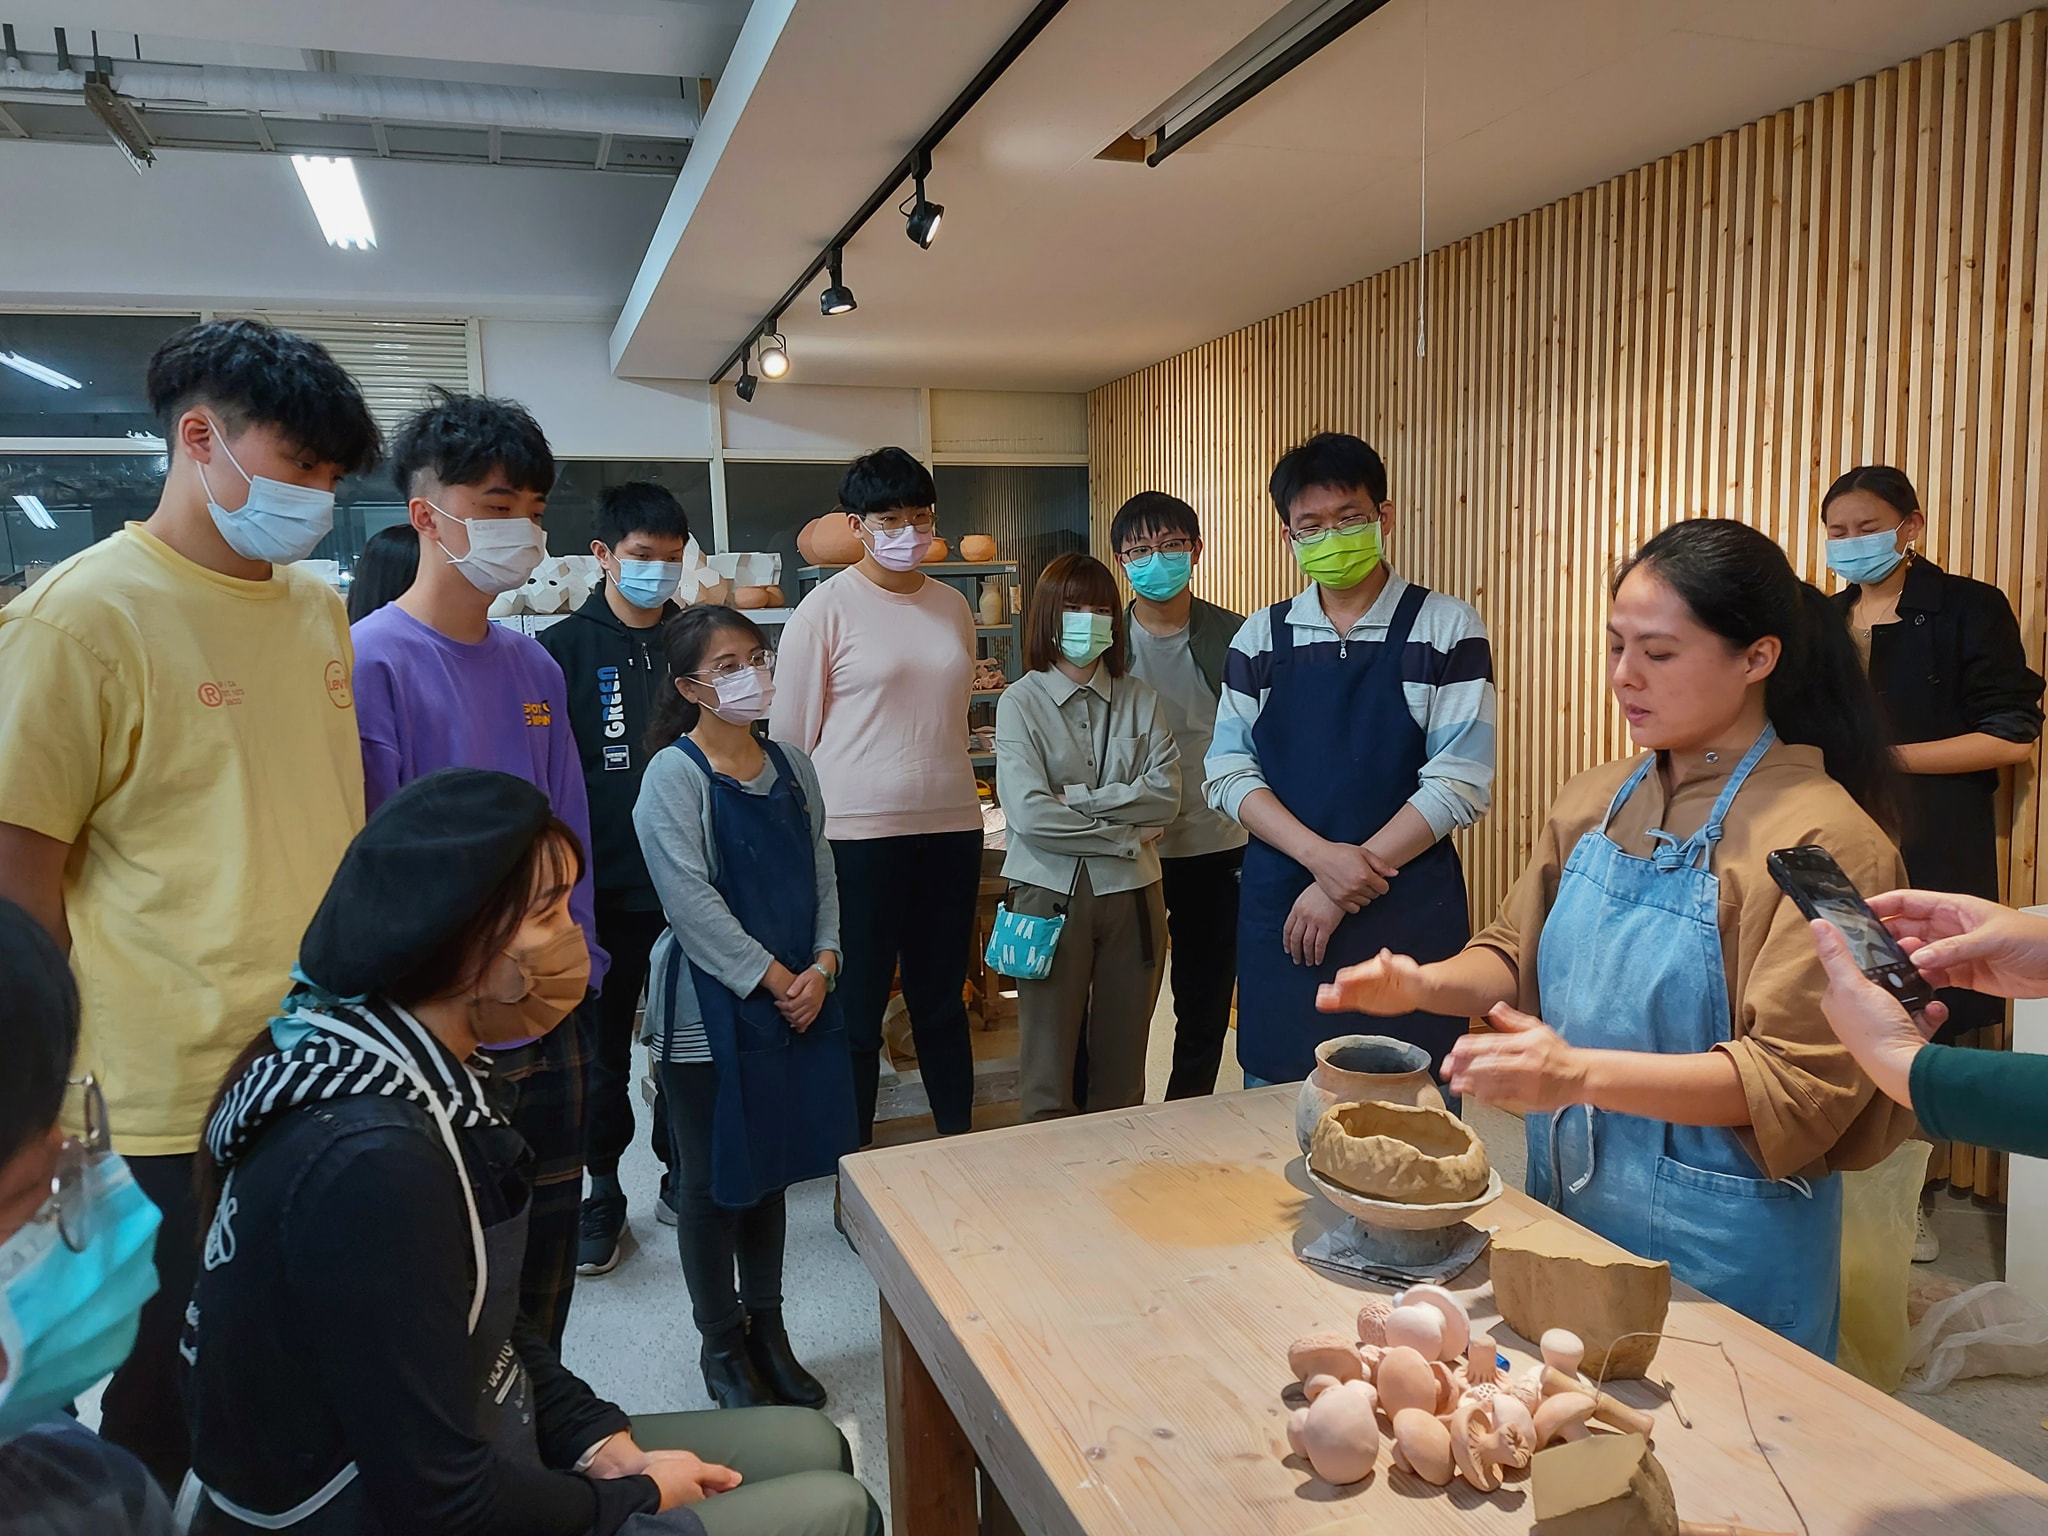 姿瑩老師先是向同學們介紹了原住民族製作陶器的造型